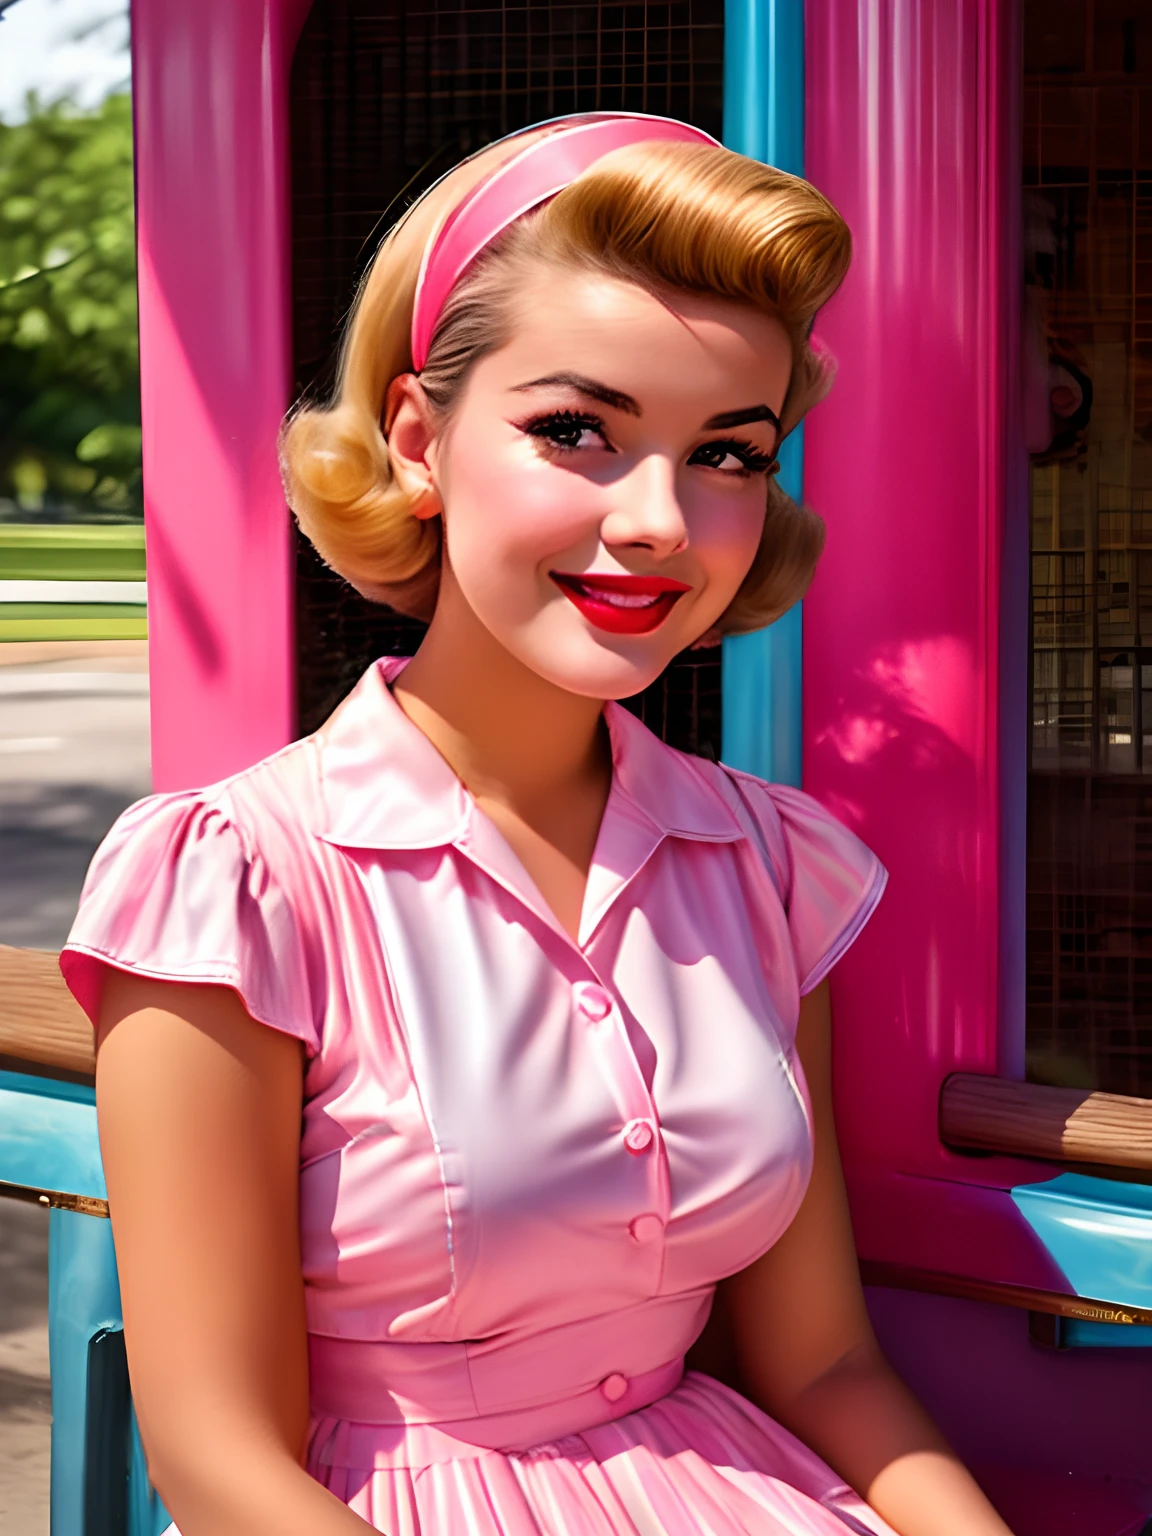 Alafed mulher em vestido rosa e azul sentado no banco, estilo anos 50, estilo anos 50, retro estilo anos 50, modelo pin-up retrô, 1 9 estilo anos 50, pin-up dos anos sessenta, foto colorida vintage, linda jovem, Cor Vintage 1 9 5 0 S, menina pin-up, Vibrações dos anos 1950